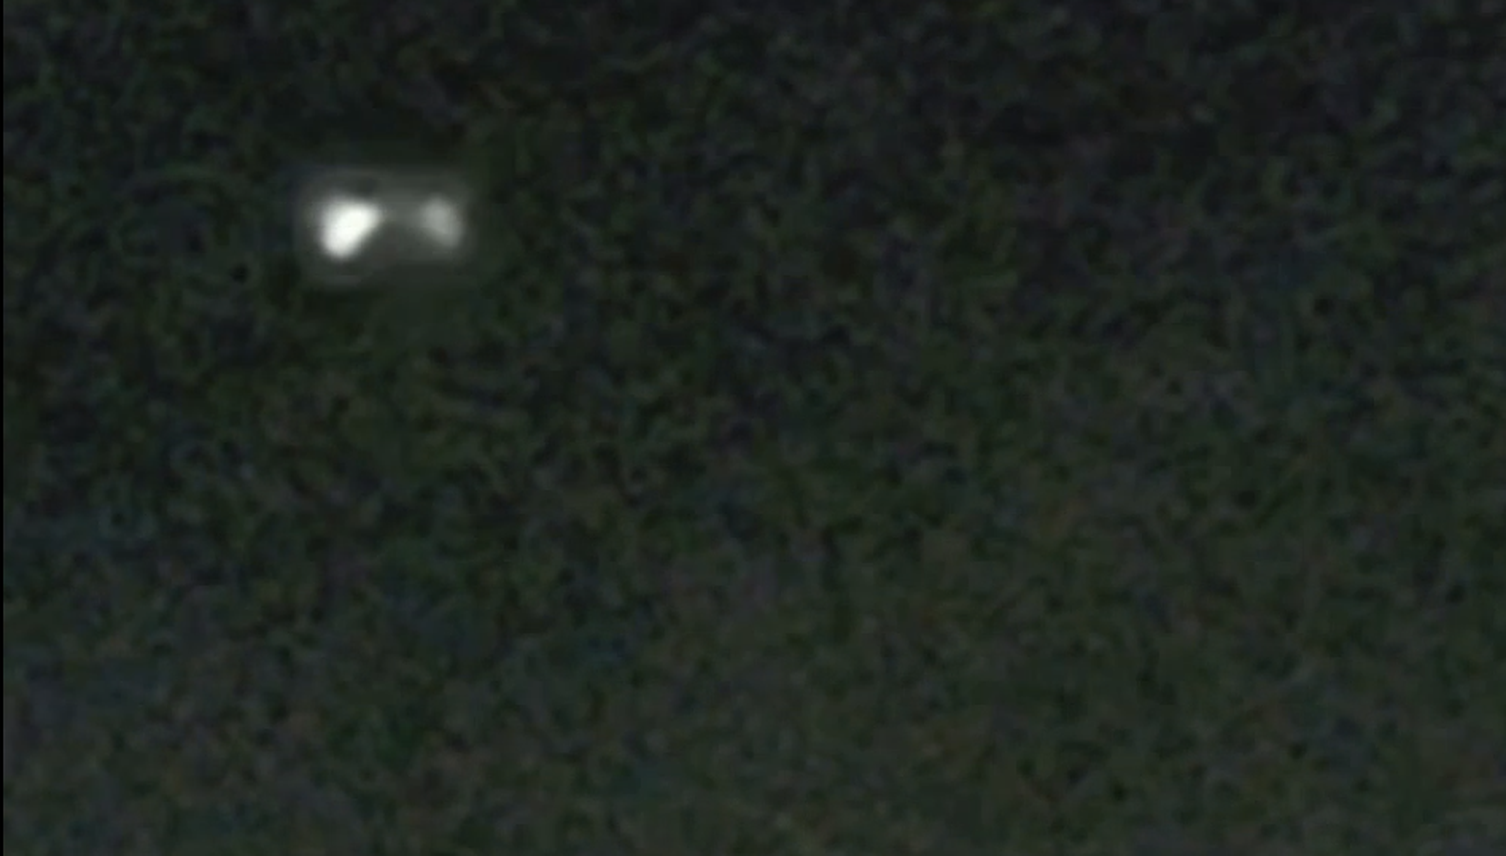 «Glaubwürdigste Ufo-Sichtung» über Luzerner Gemeinde